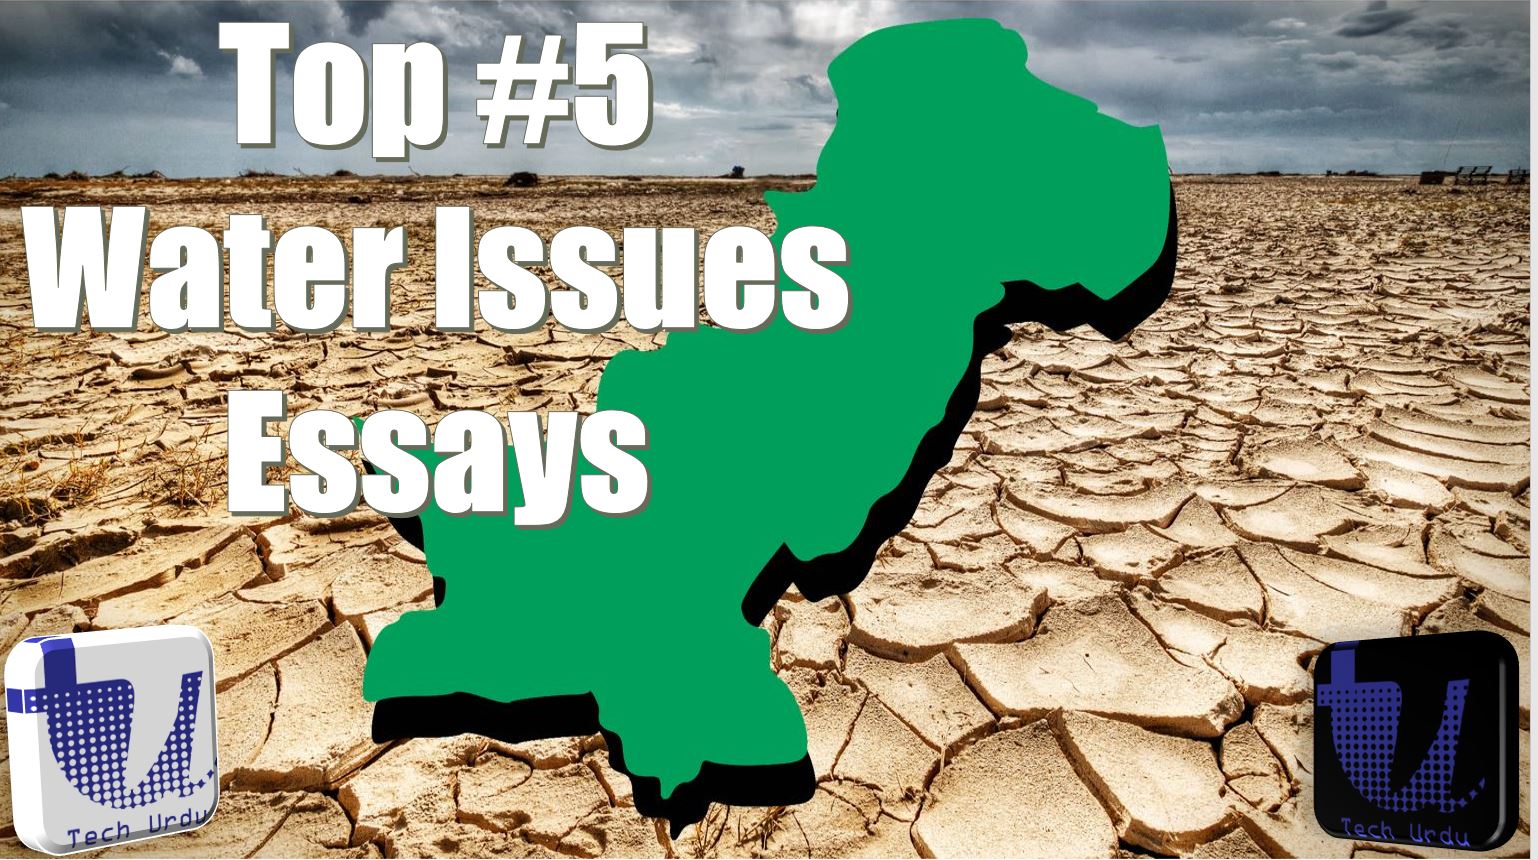 water security challenges in pakistan essay